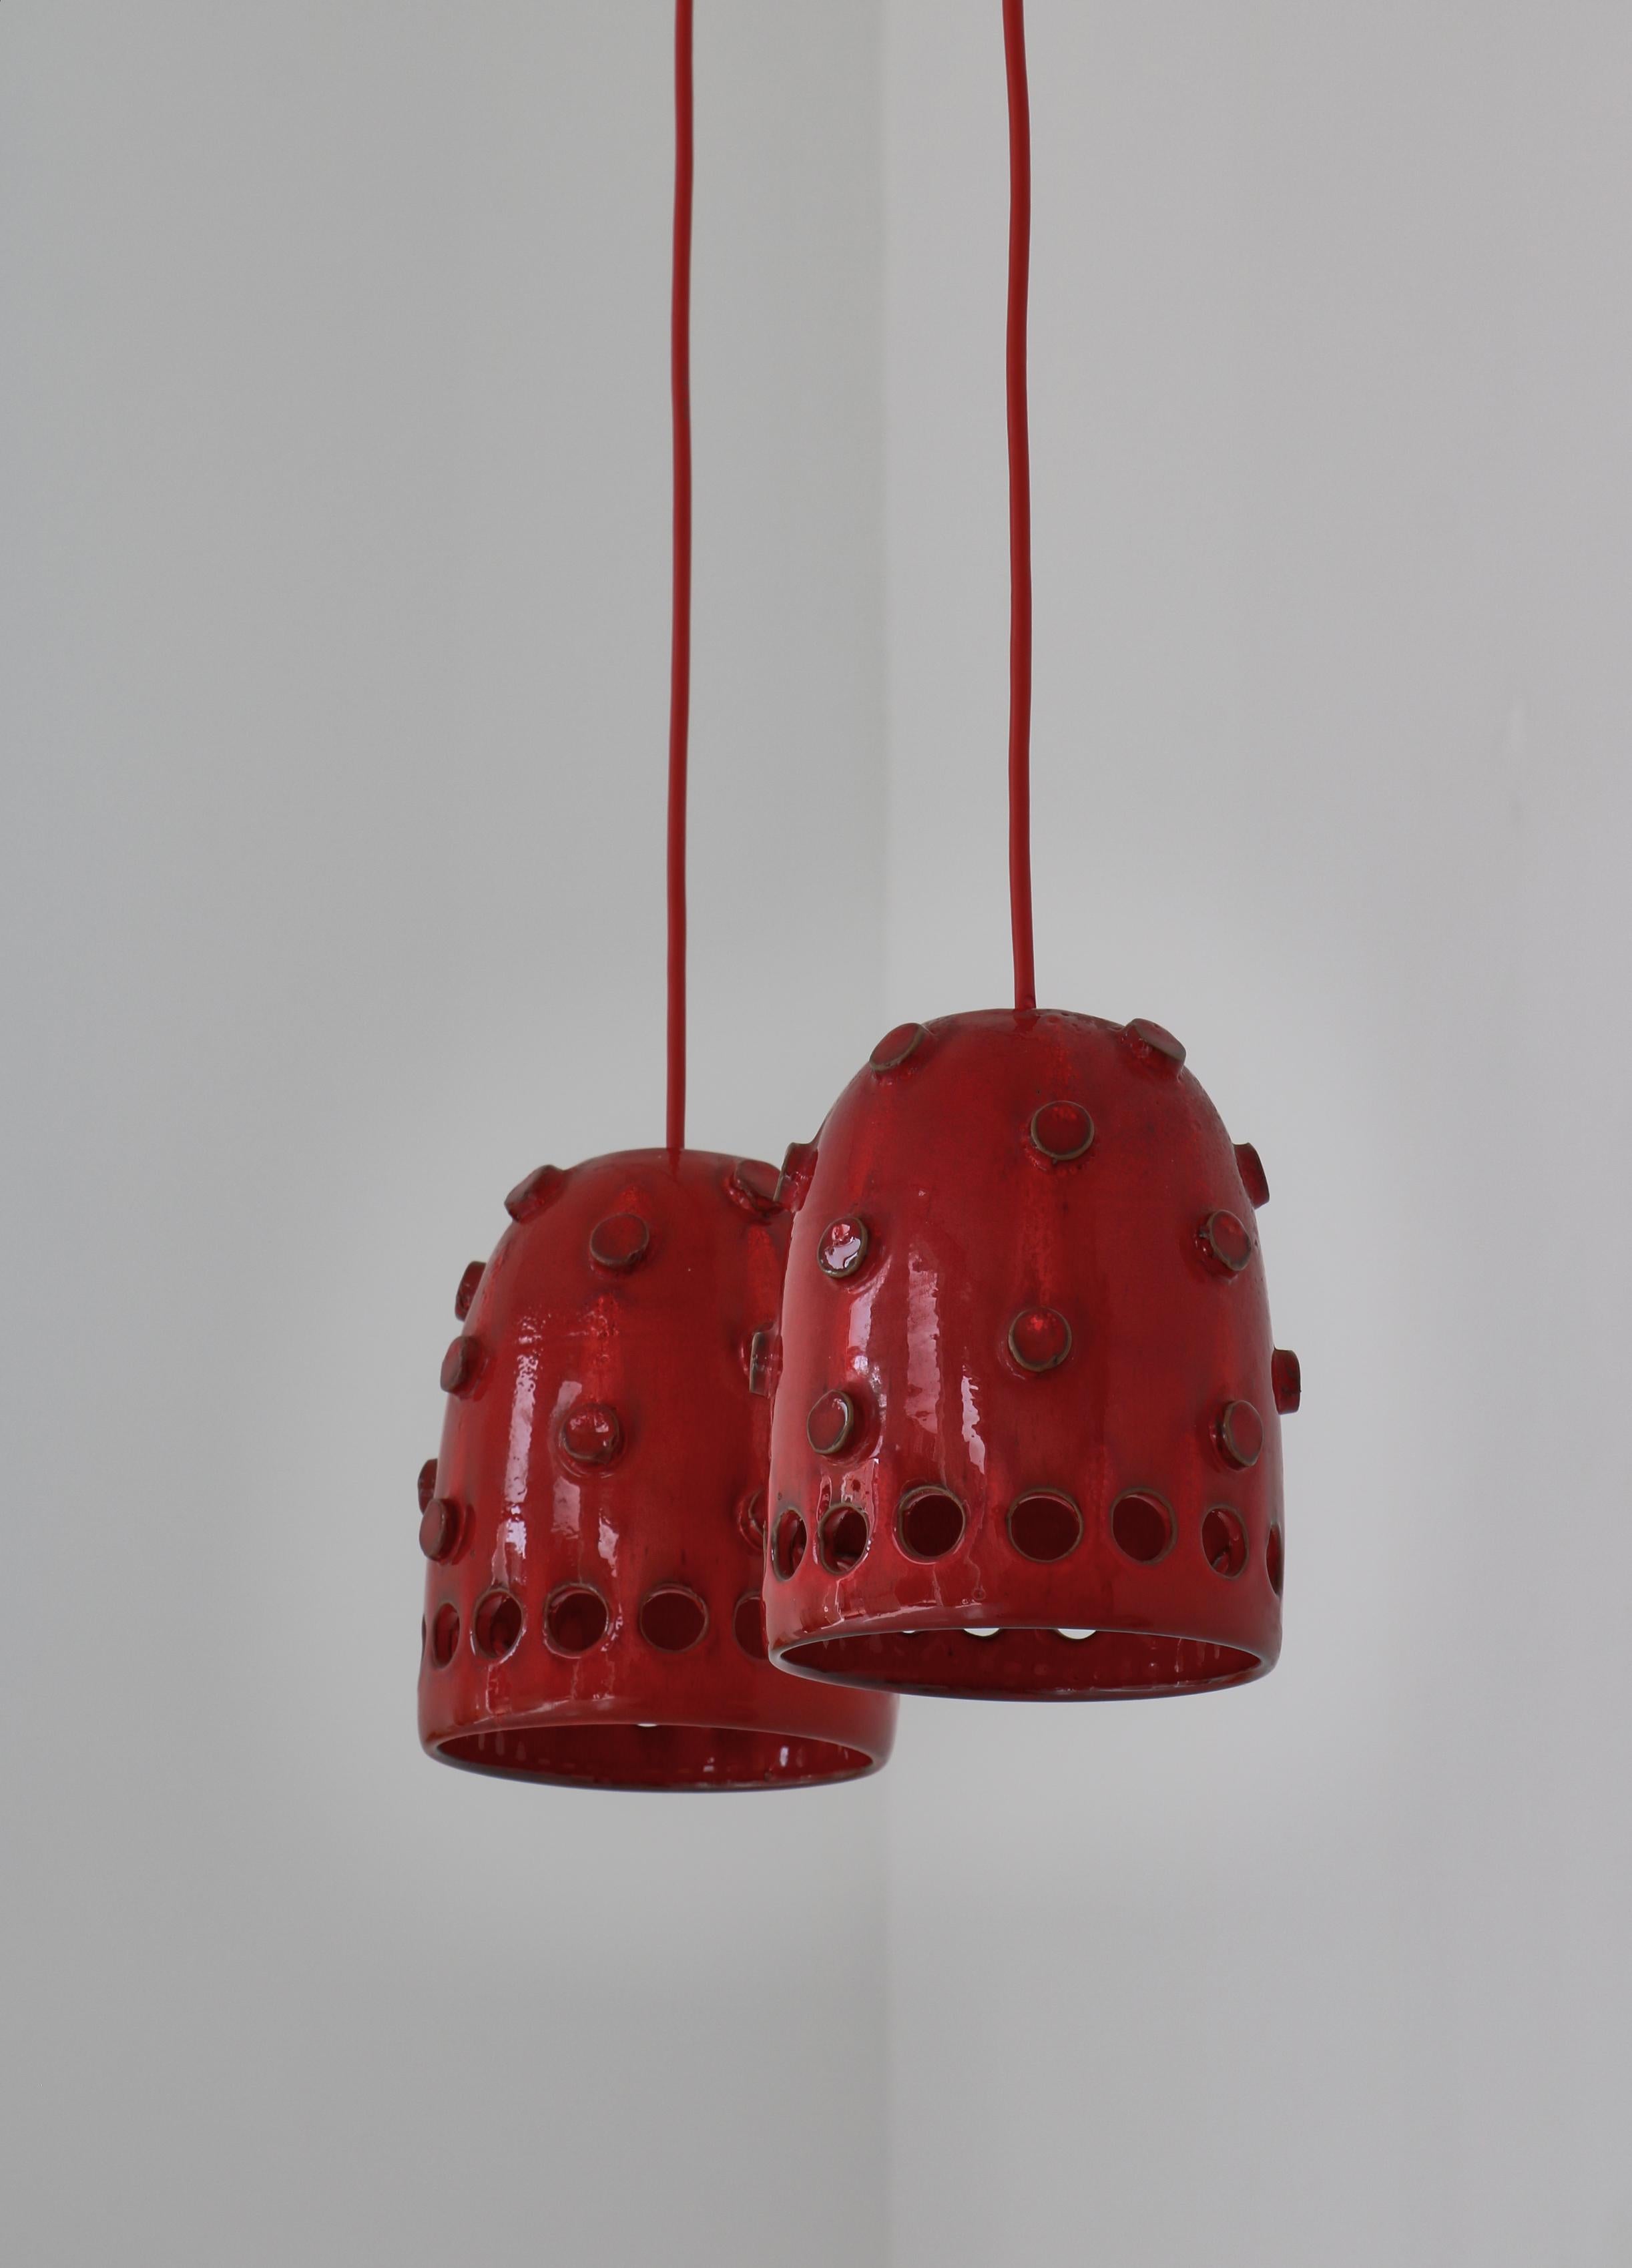 Einzigartige dänische moderne Anhänger, handgefertigt in den 1970er Jahren von der Künstlerin Jette Hellerøe im Studio Axella, Dänemark. Die Lampen sind aus Steingut gefertigt und mit einer ausdrucksstarken, glänzenden roten Glasur versehen.